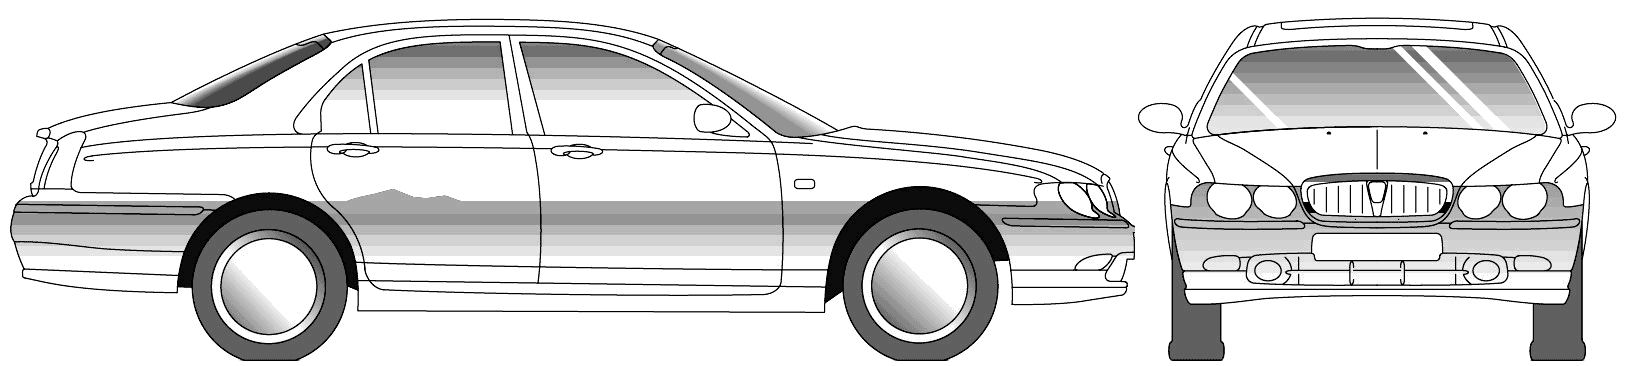 Bil Rover 75 2001